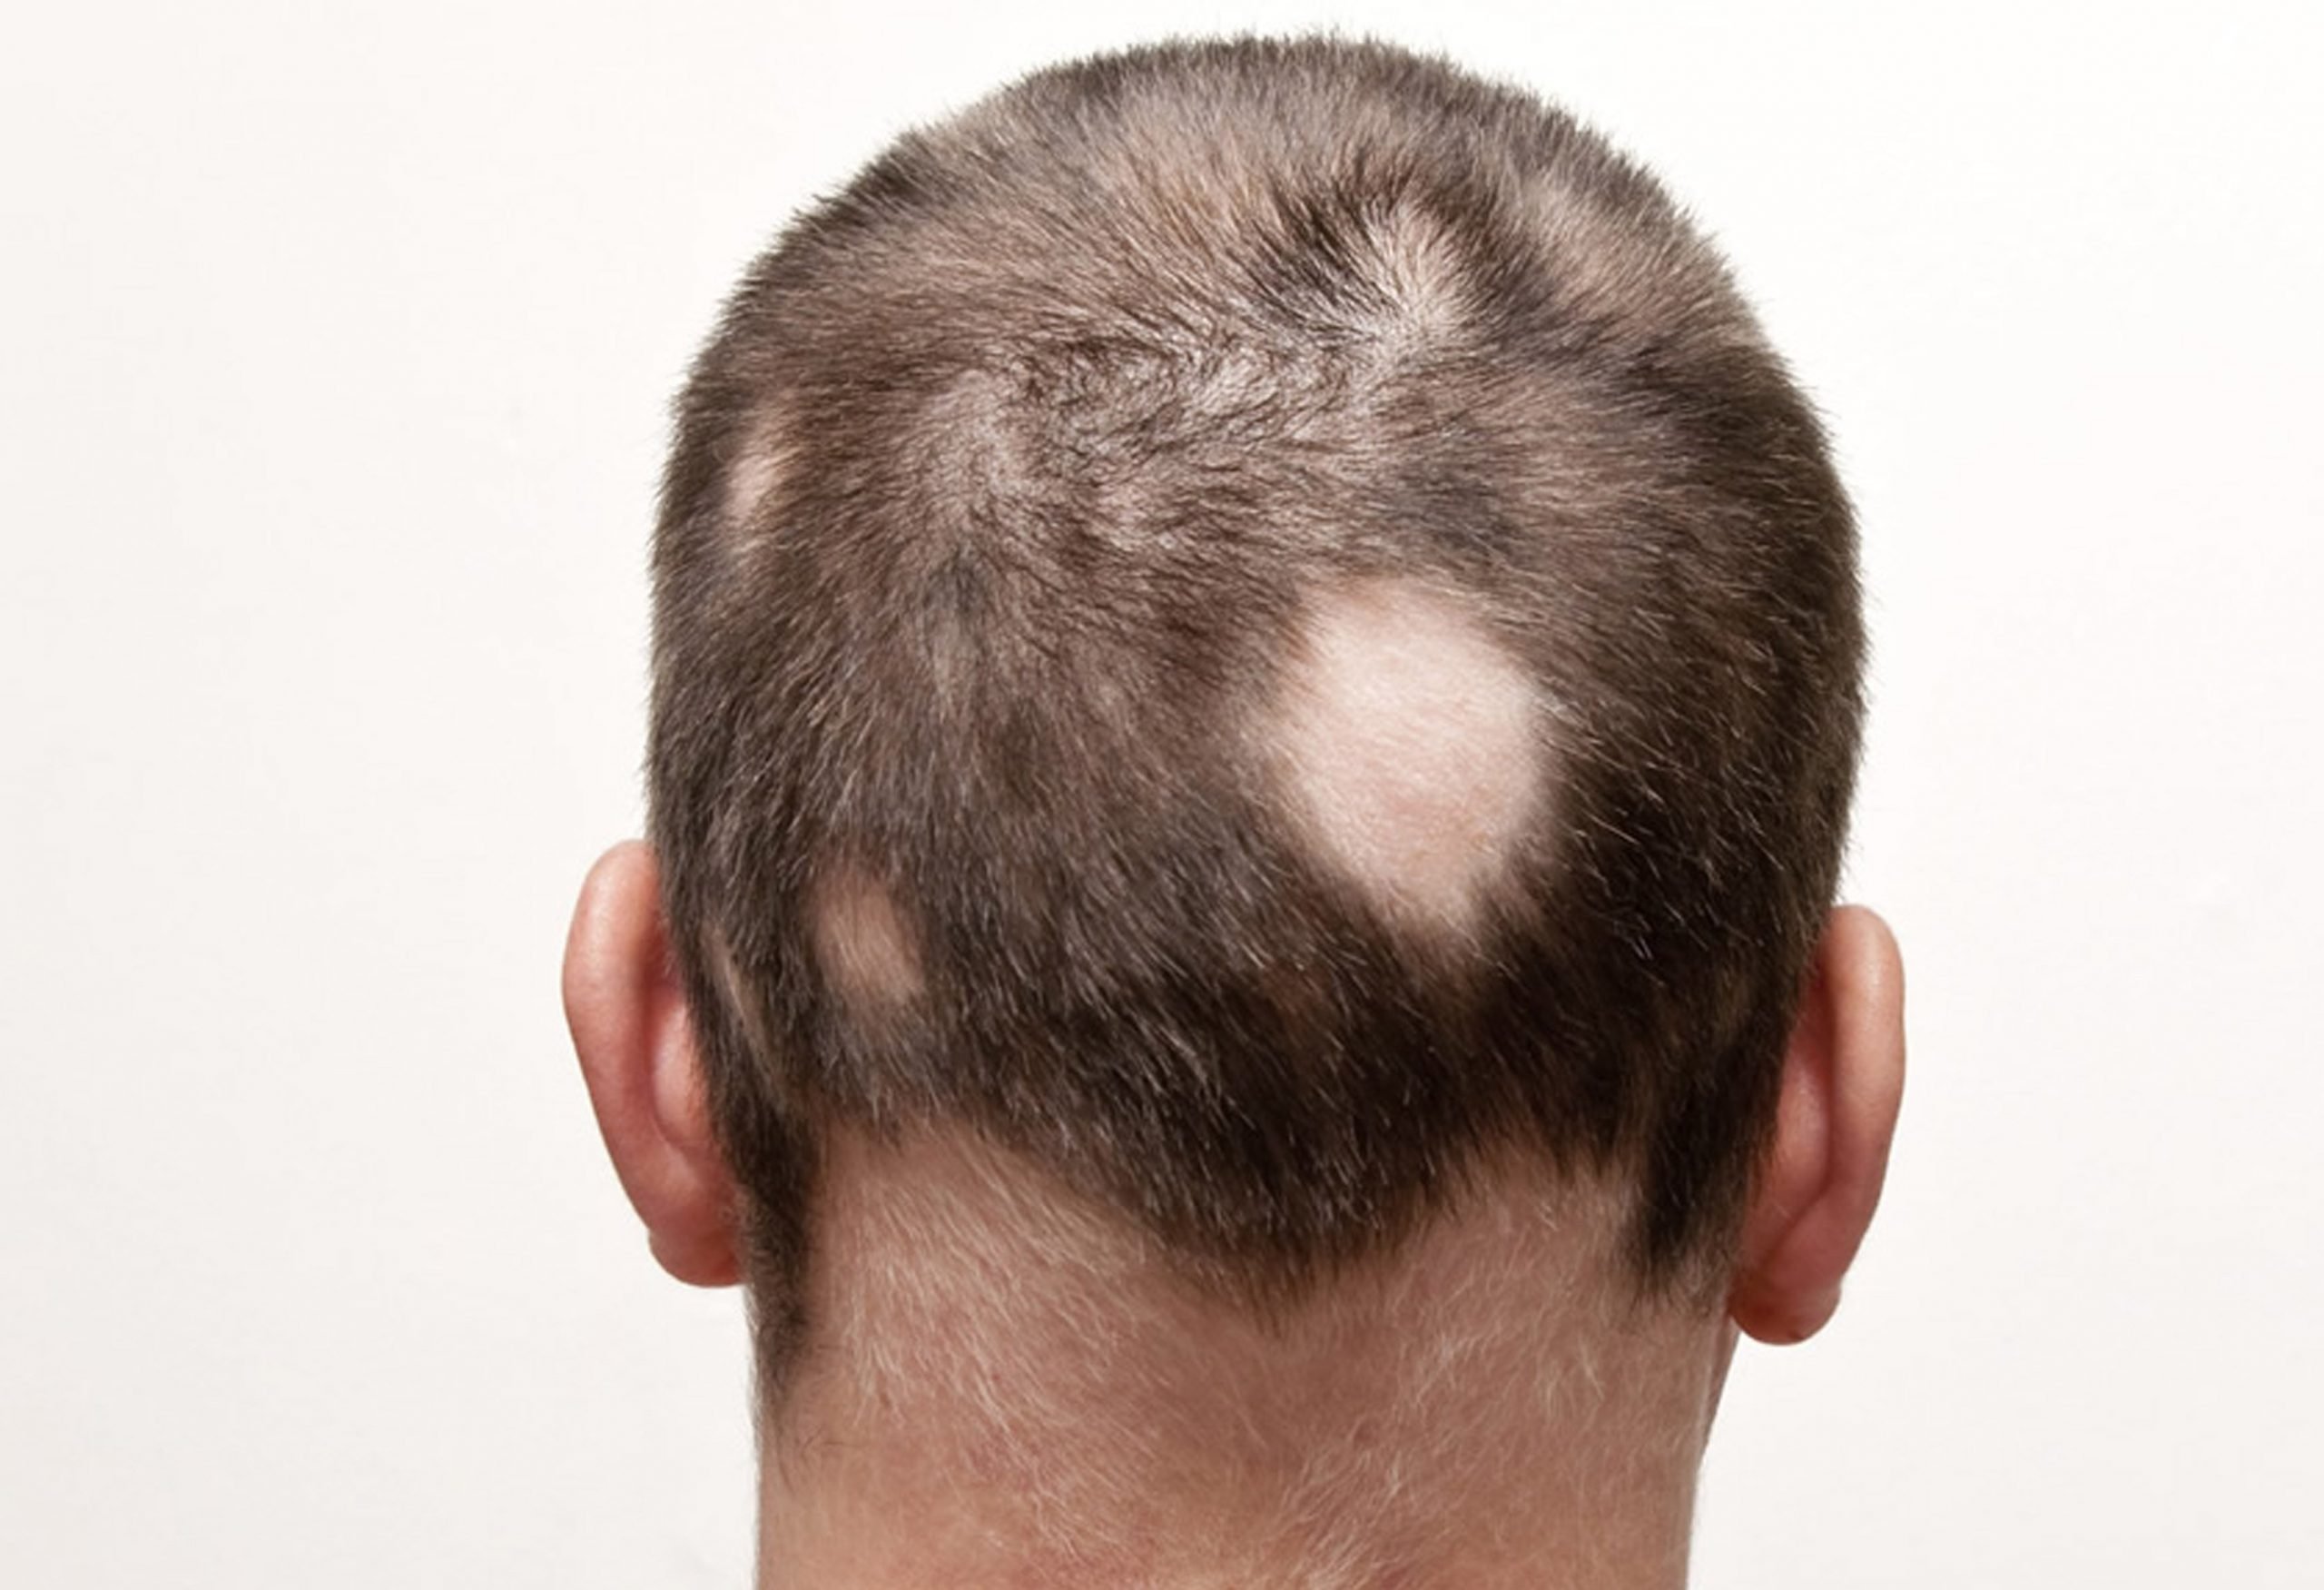 Alopecia and Hair Loss